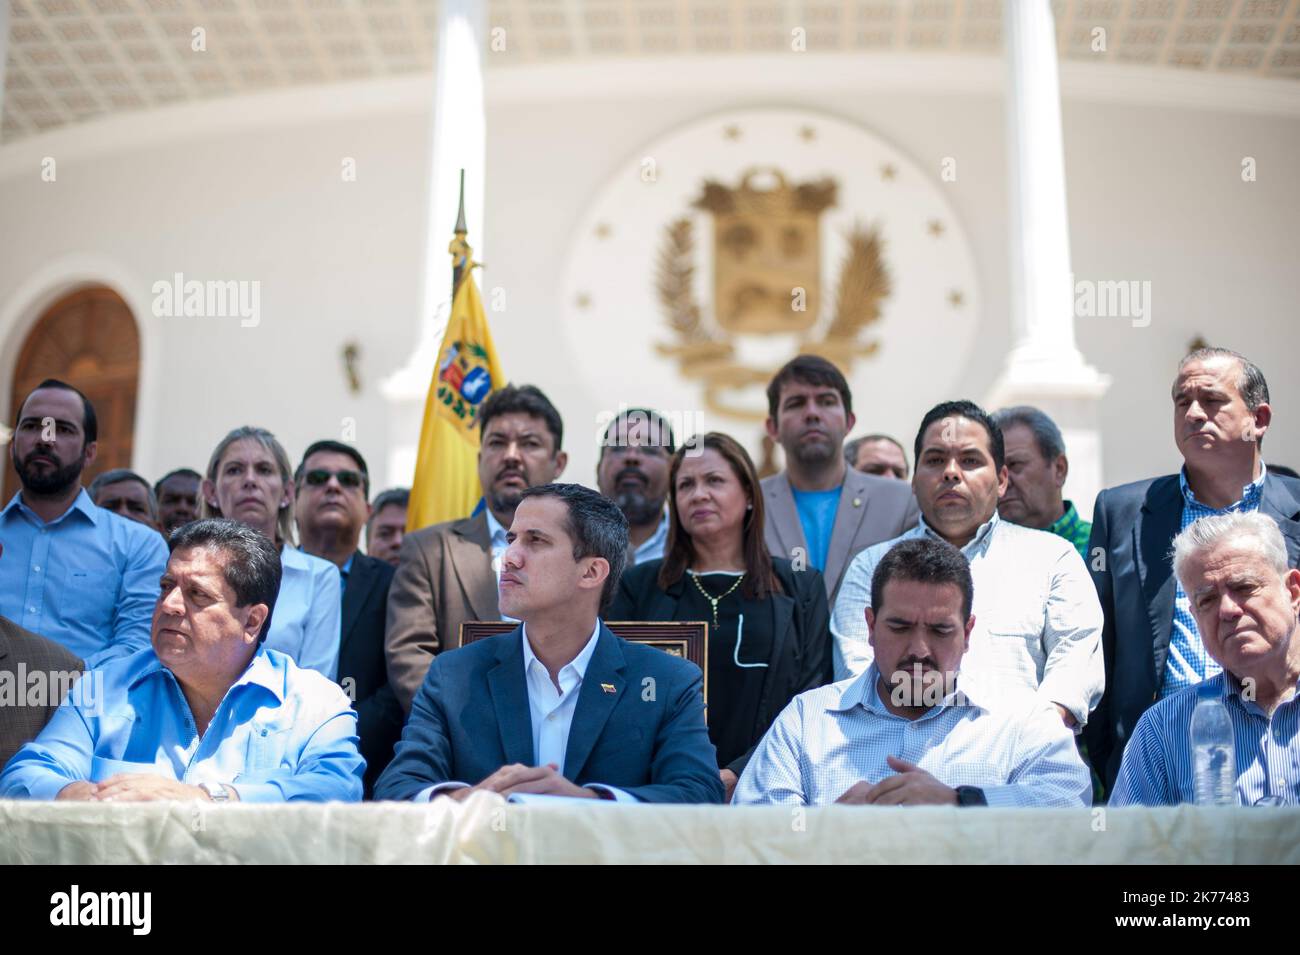 Der venezolanische Oppositionsführer Juan Guaido spricht während einer Pressekonferenz im Bundesgesetzgebenden Palast, Sitz der Nationalversammlung, in Caracas, Venezuela, am 10. März 2019. Juan Guaido, der als Interimspräsident Venezuelas anerkannt wurde, kündigte an, dass er die Abgeordneten bitten werde, einen „Notstand“ auszurufen, um der „Katastrophe“ zu begegnen, die das Land aufgrund eines Stromausfalls durchmacht, der bereits fast 70 Stunden beträgt. Stockfoto